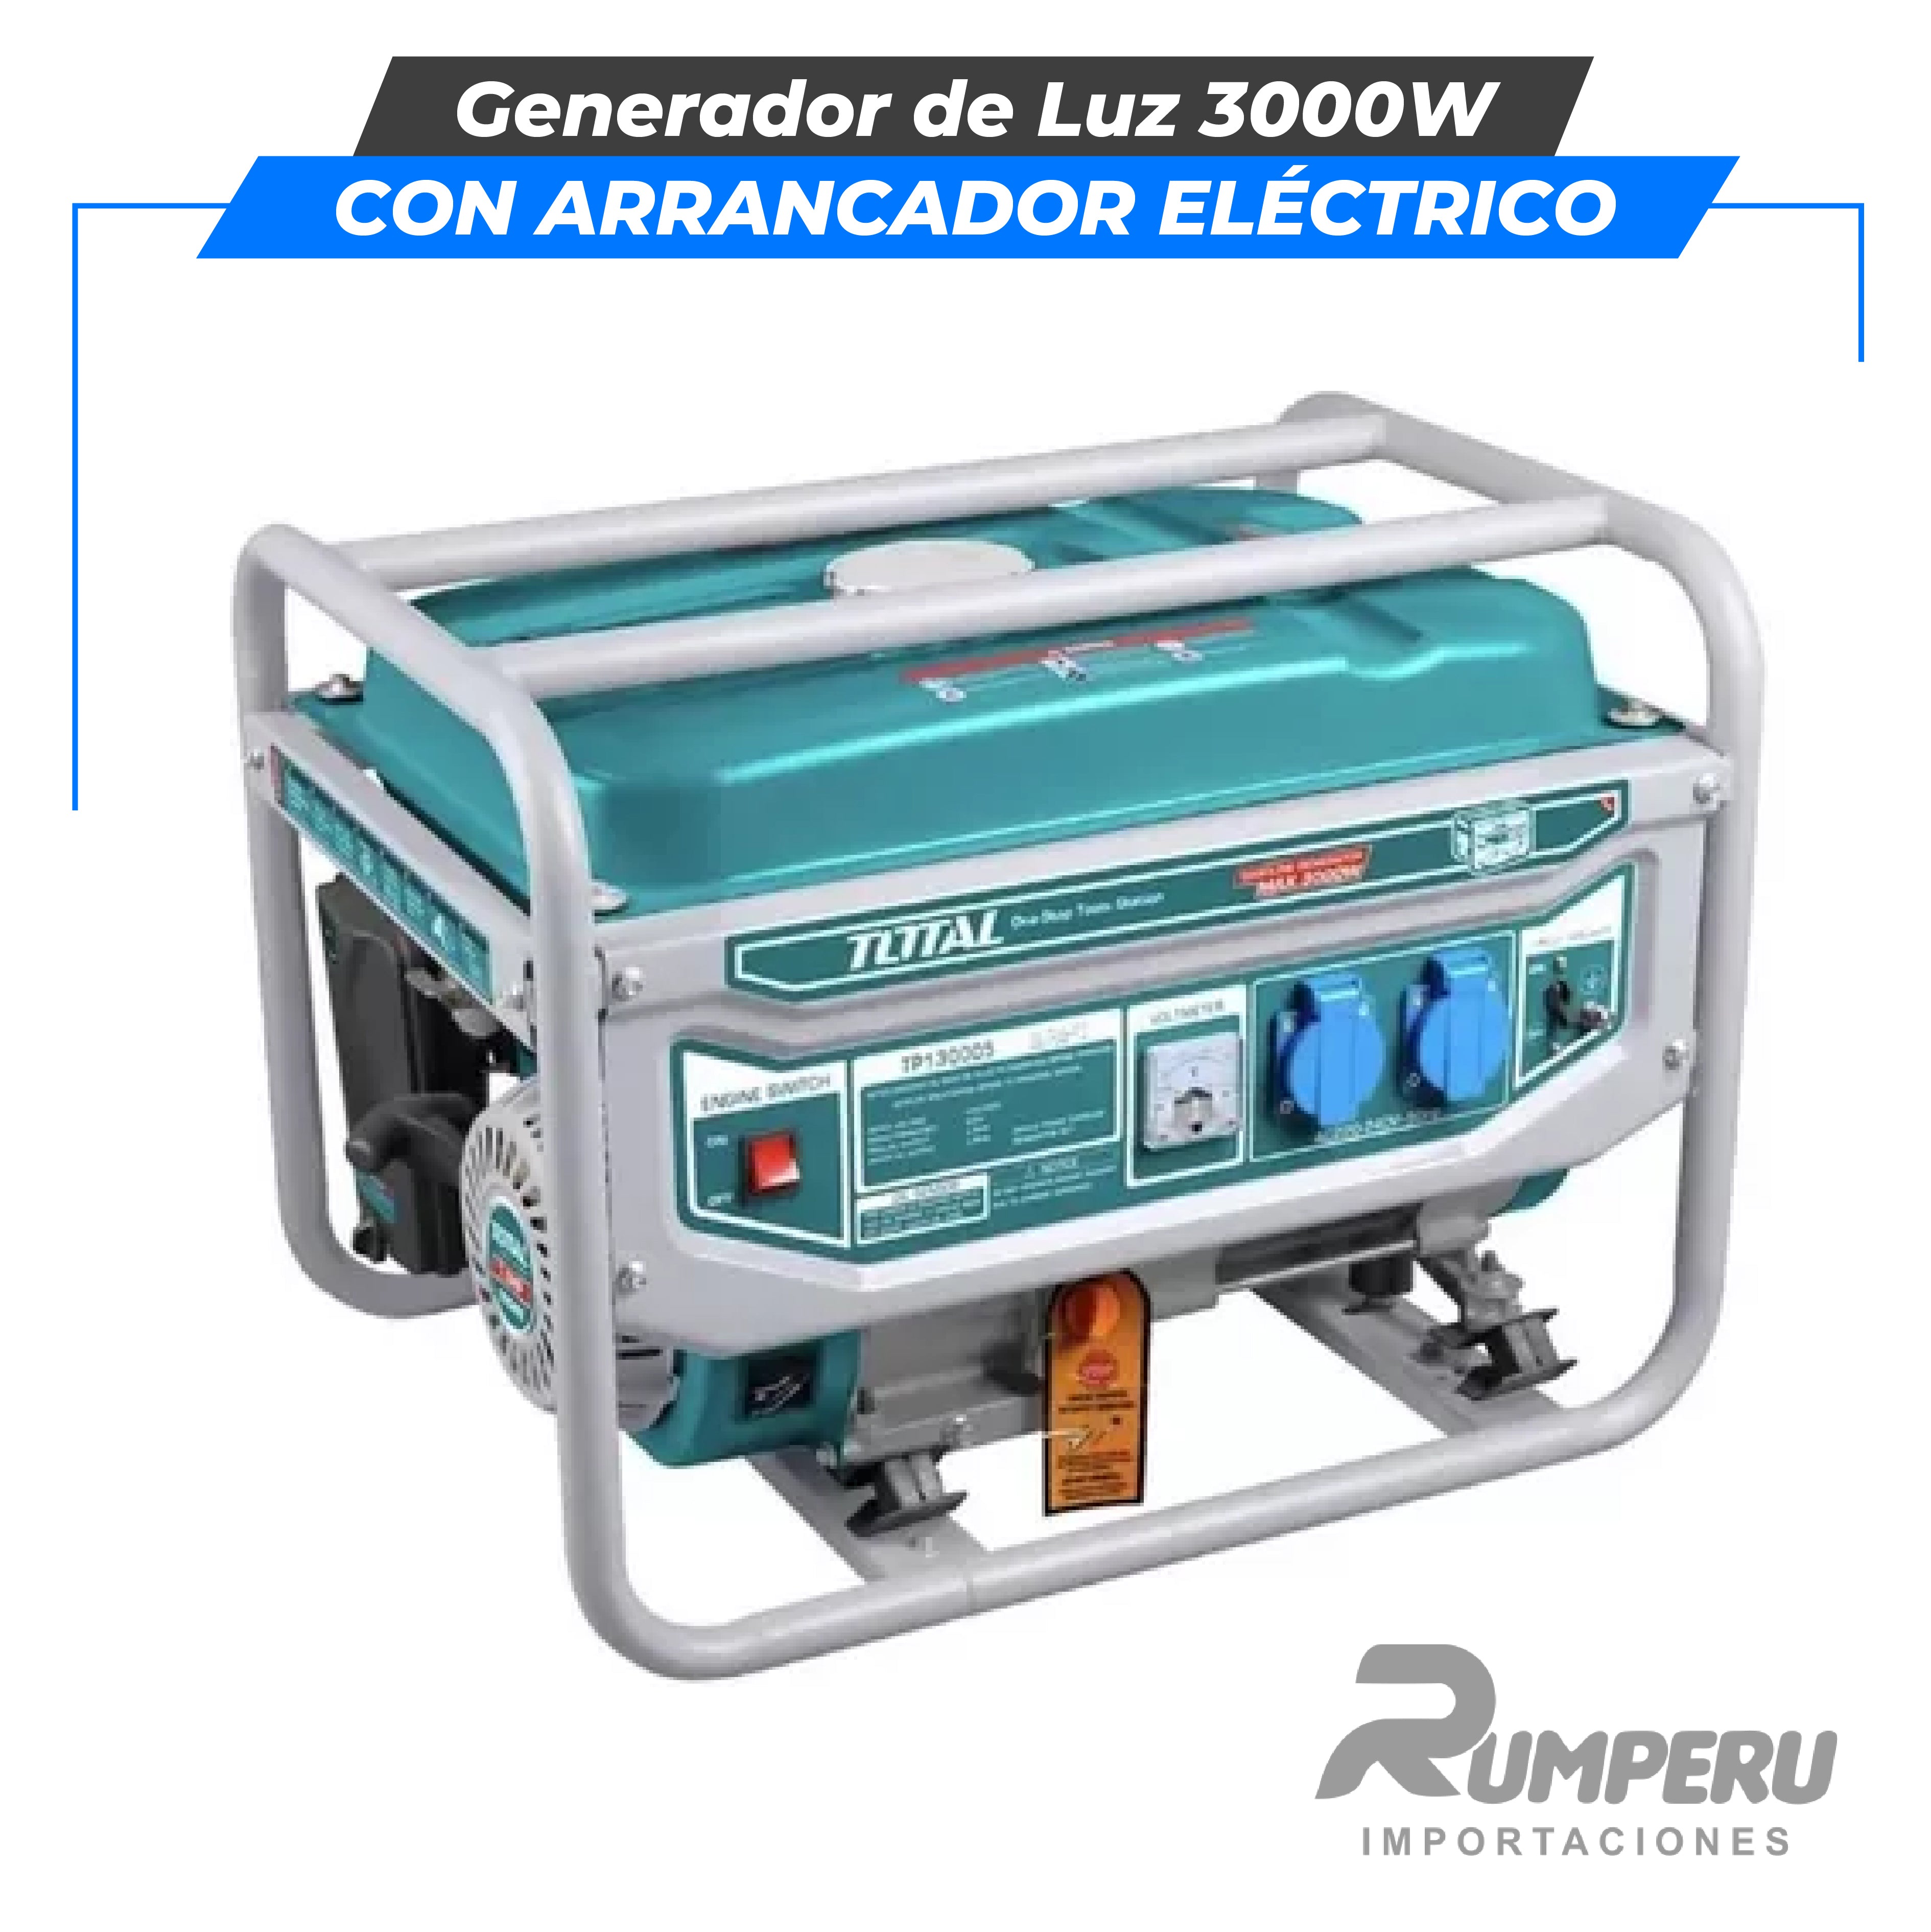 Generador de Luz 3000W (con arrancador eléctrico)